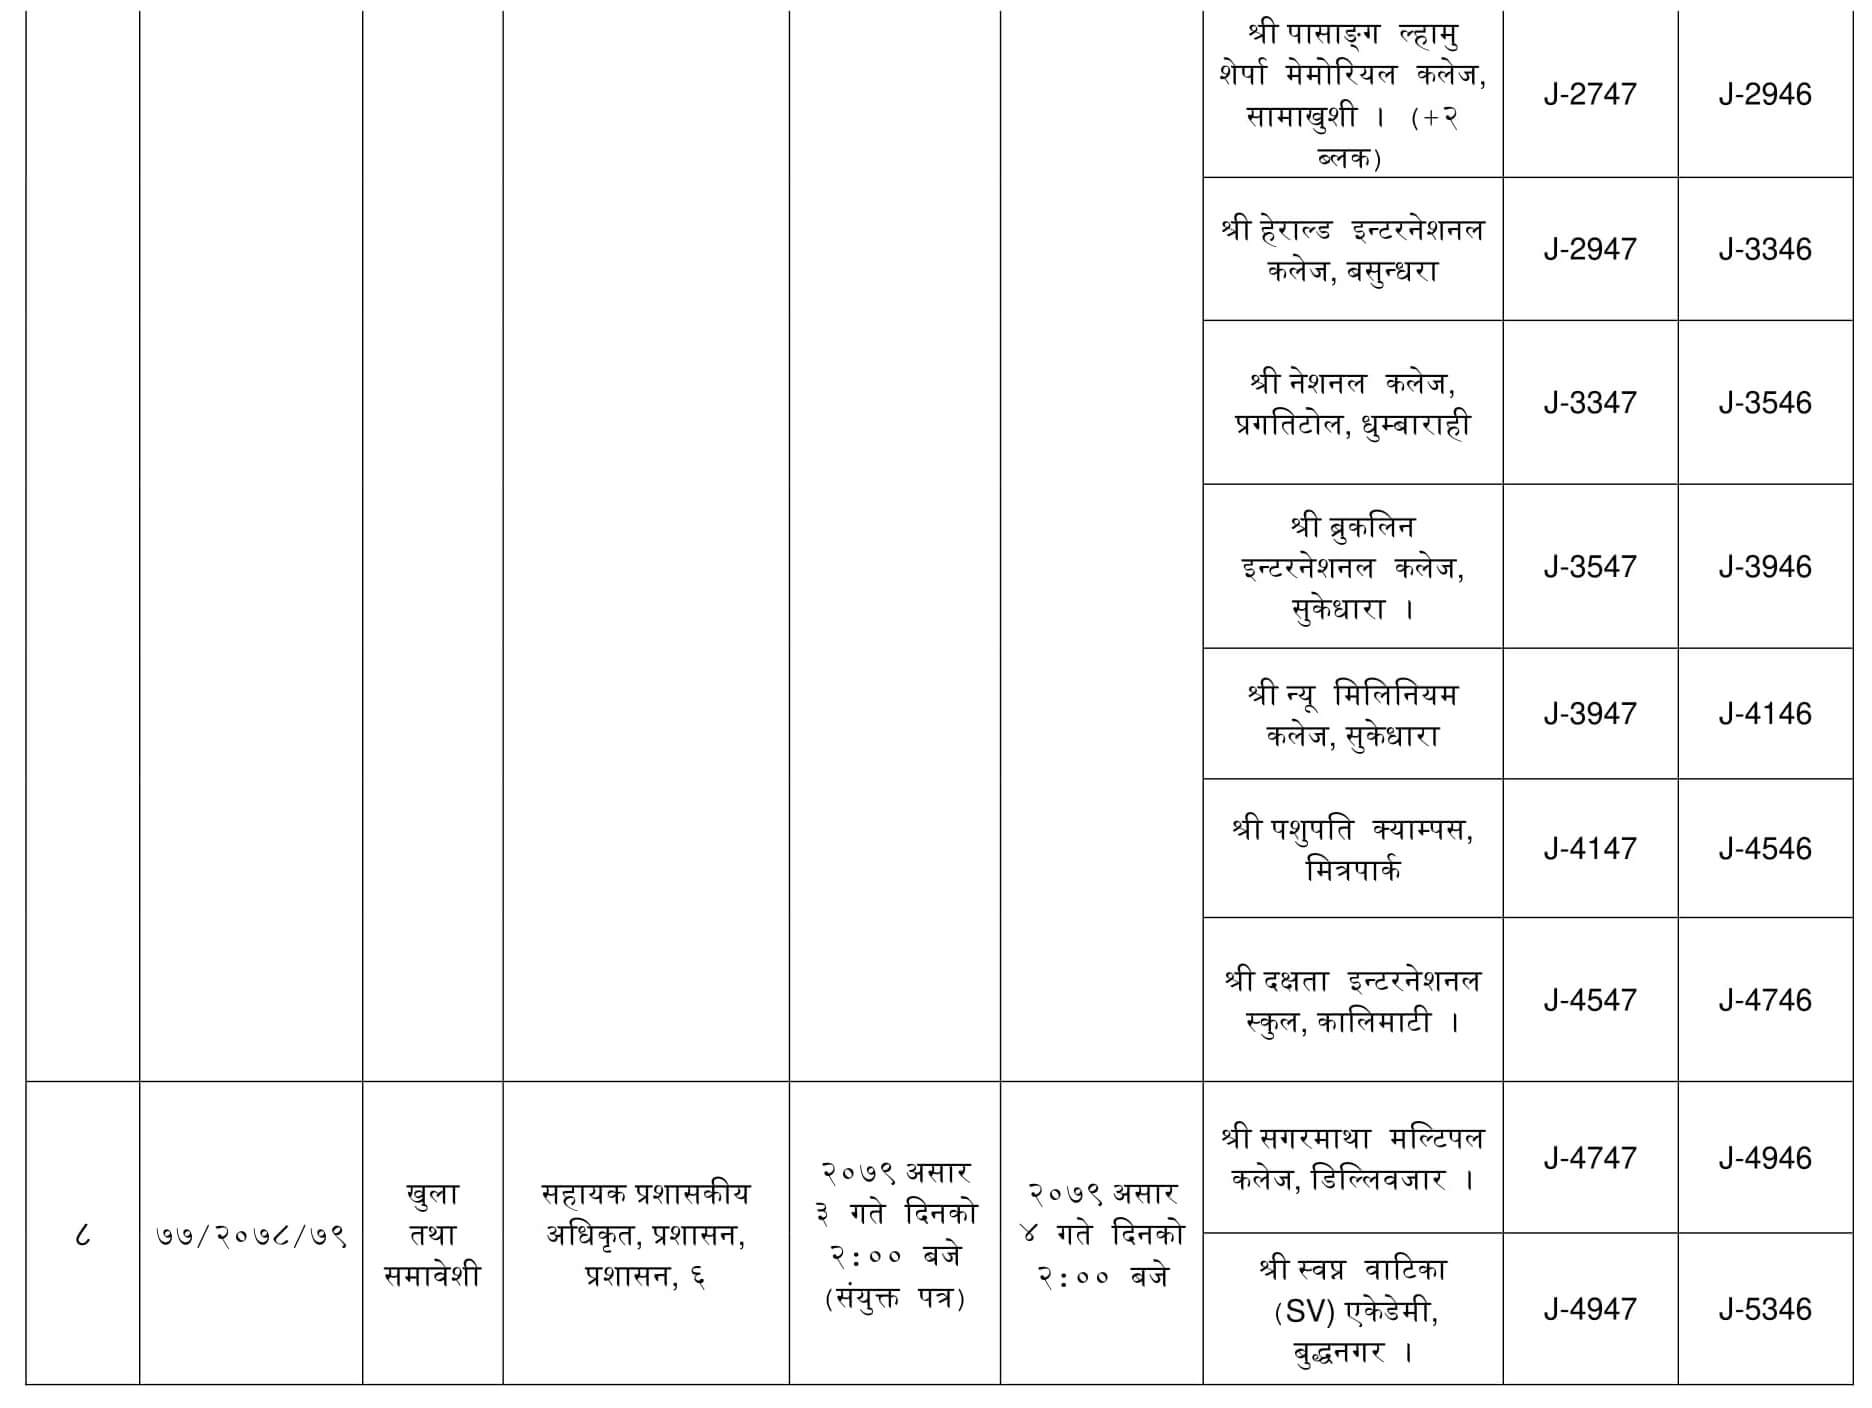 Nepal Telecom Written Exam Center of Various Post